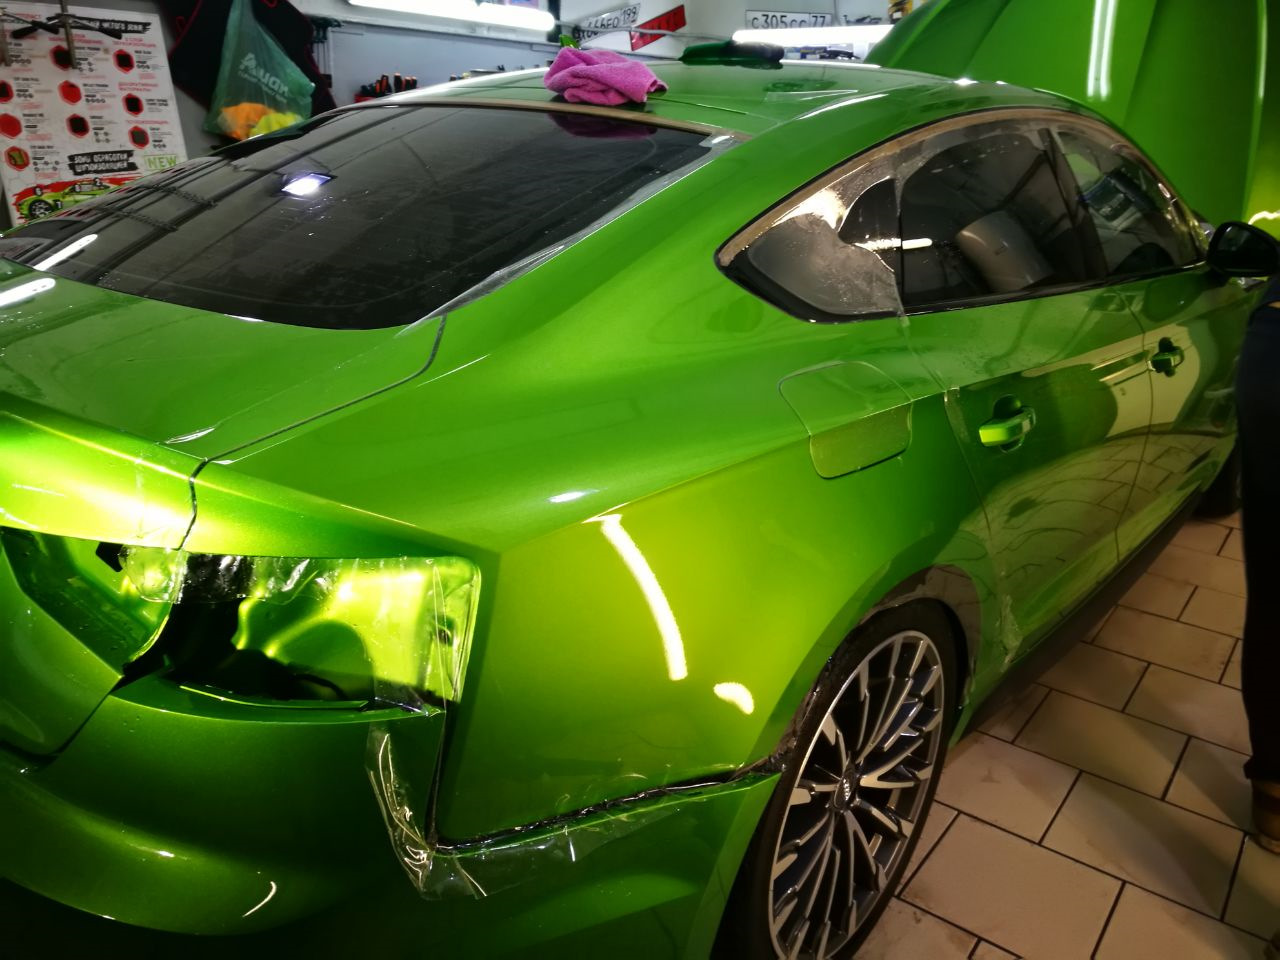 Купить пленку на машину. Audi a5 оклейка пленкой. Пленка полиуретановая java Green. Шкода пленка зеленая. Оклейка кузова q50.